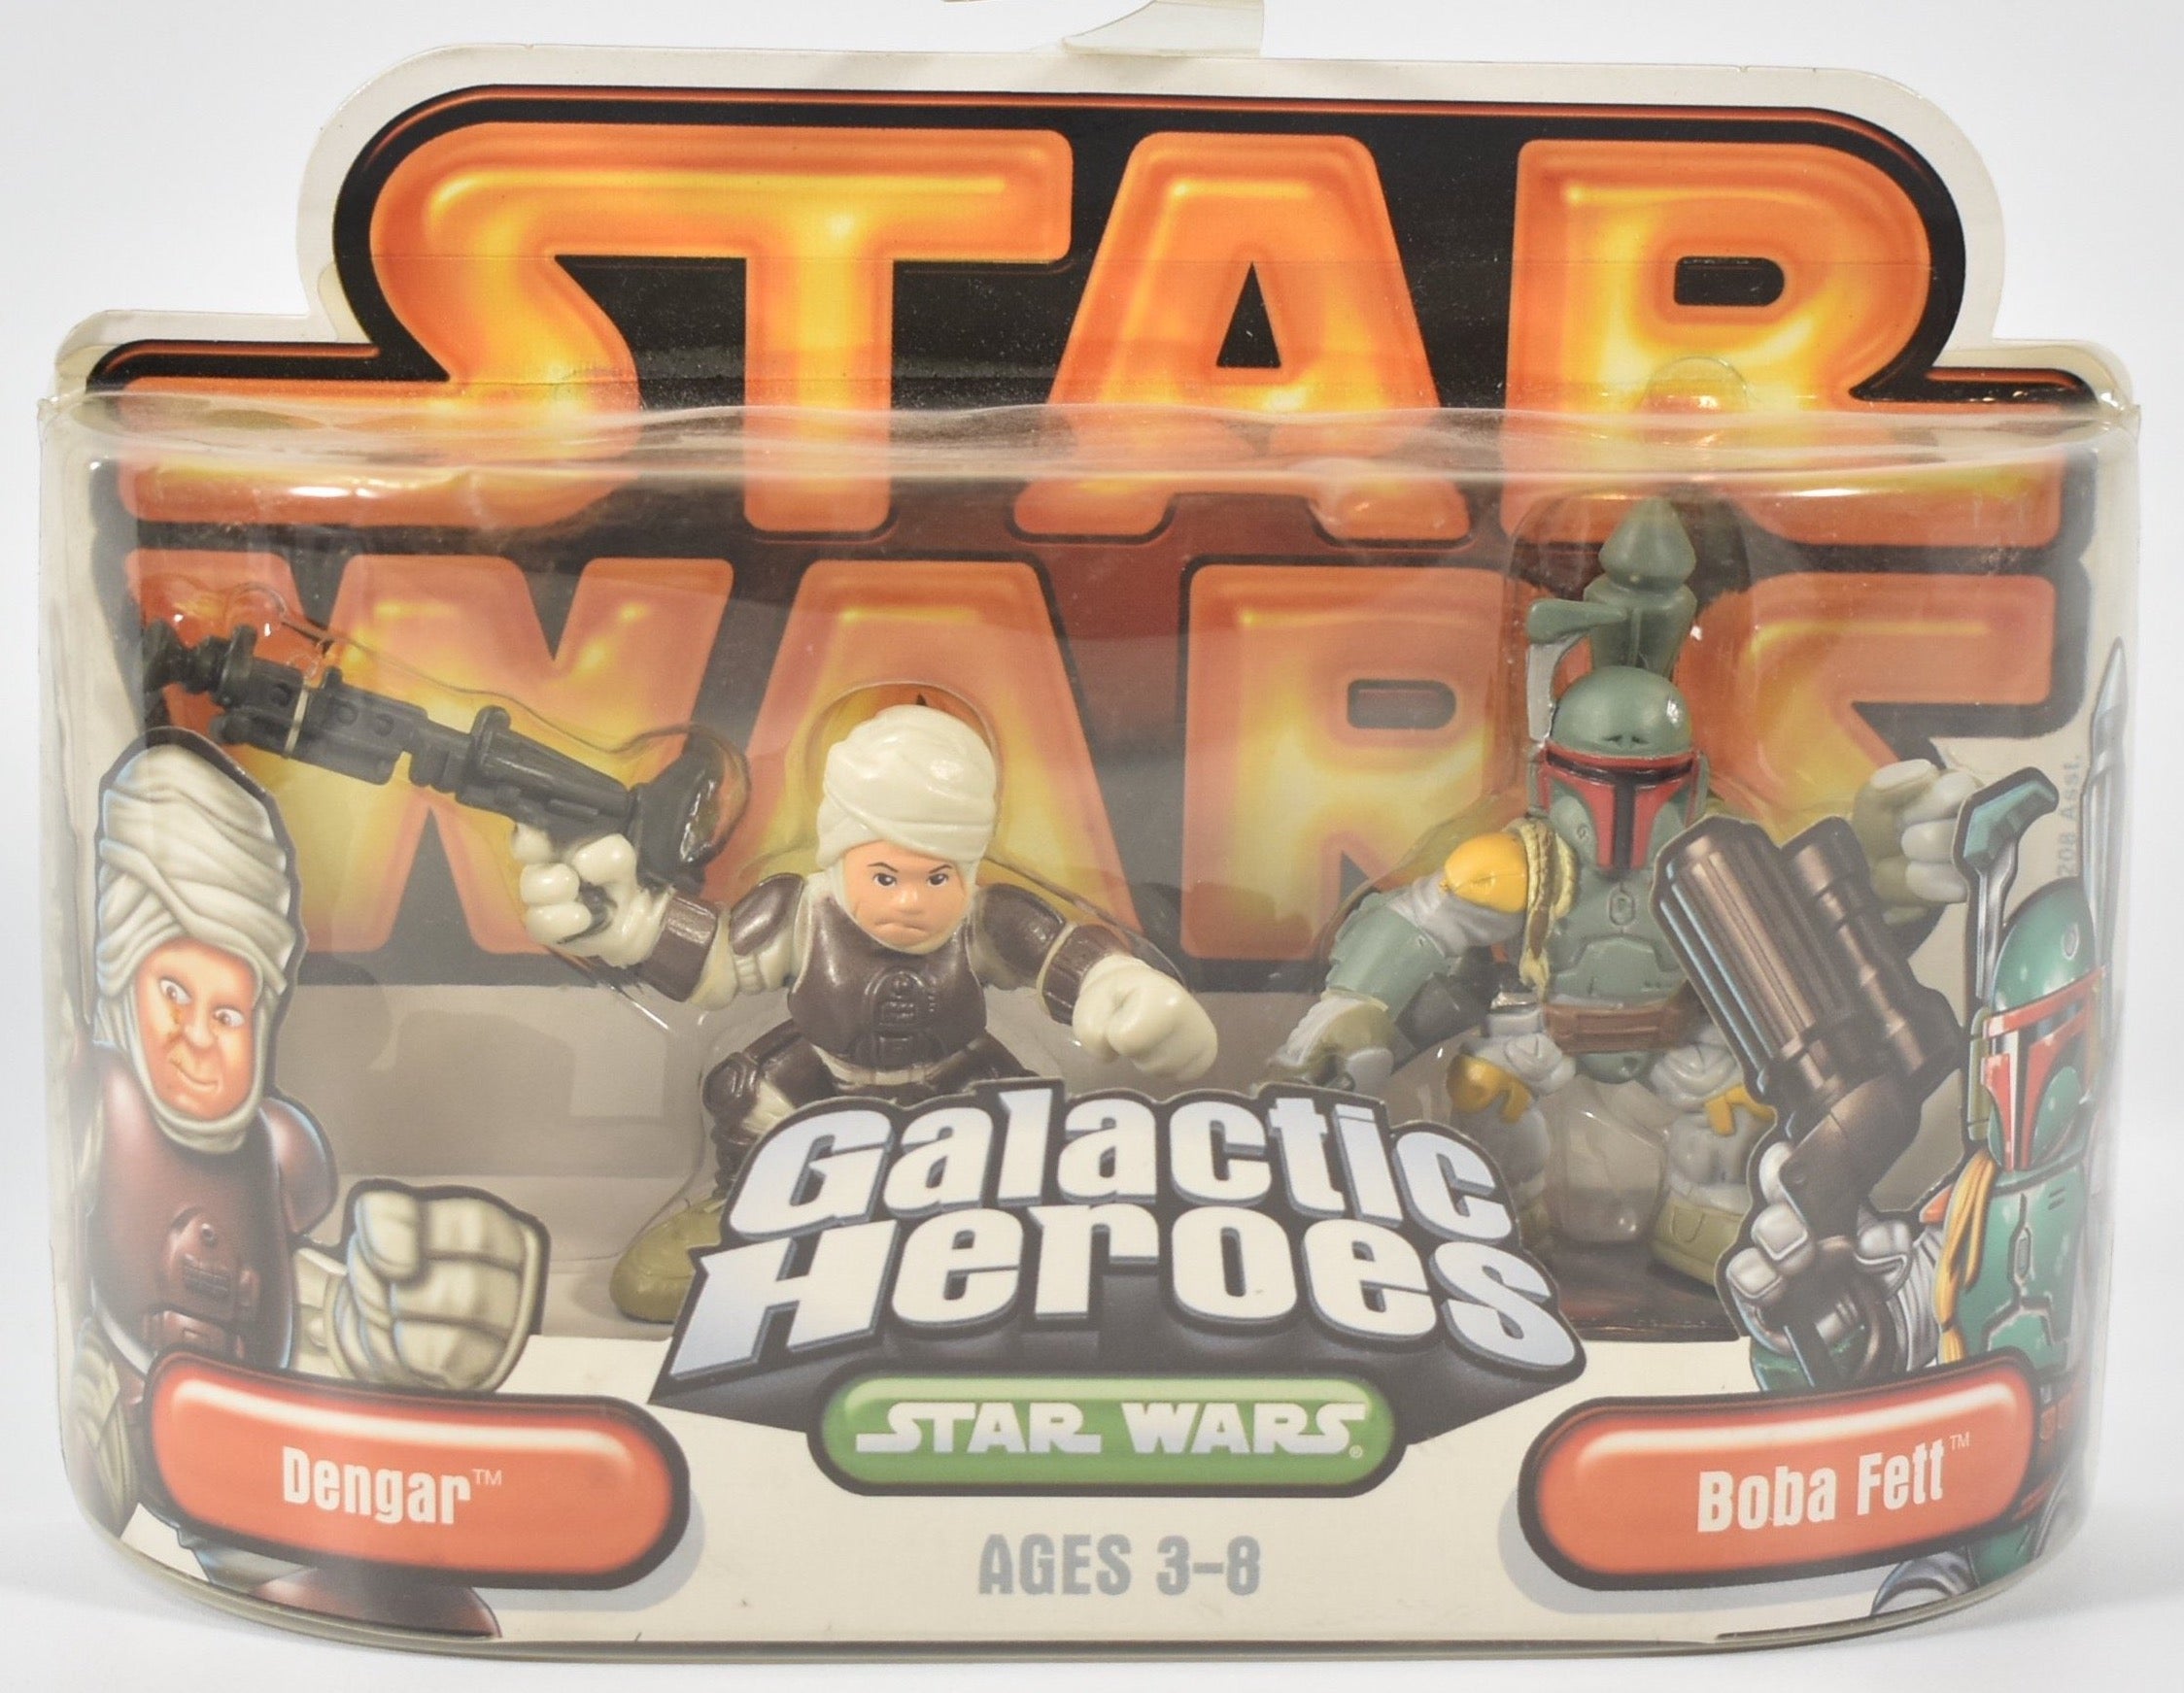 Galactic Heroes Star Wars Age 3-8 Boba Fett Dengar